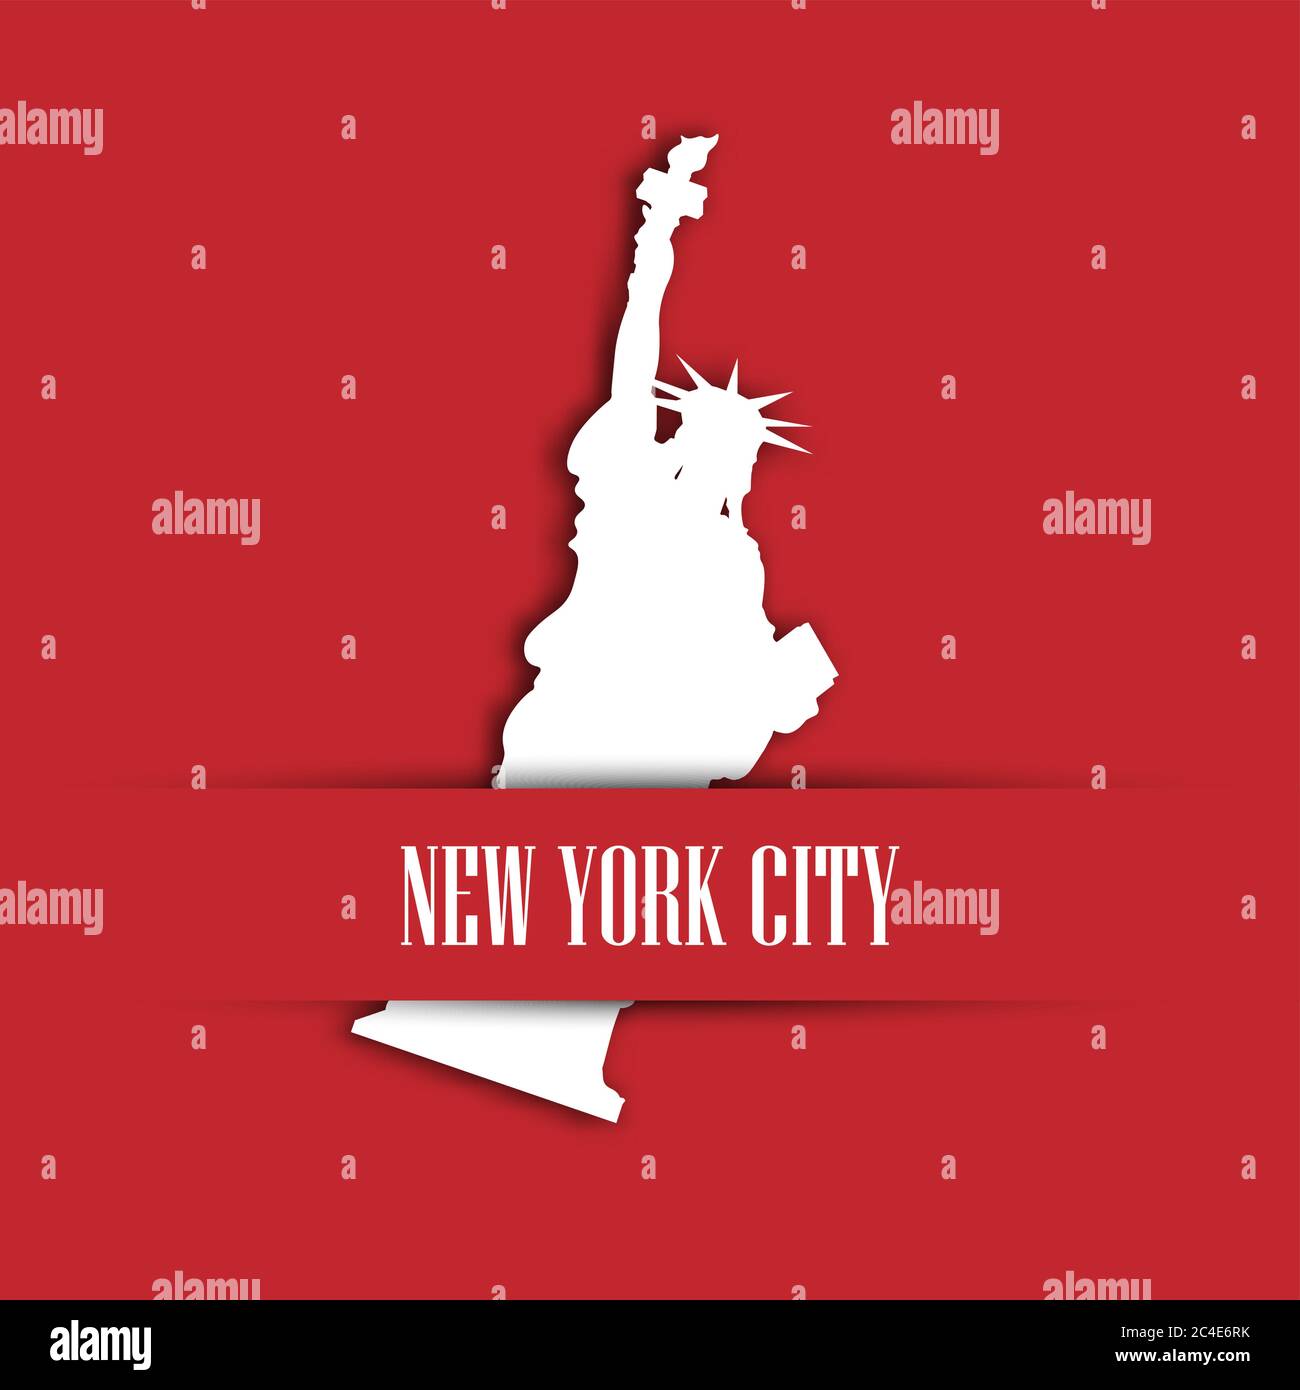 Papier blanc de la Statue de la liberté coupé dans une poche rouge pour carte de vœux avec étiquette New York City. Symbole des États-Unis et thème de la journée de l'indépendance. Illustration vectorielle. Illustration de Vecteur